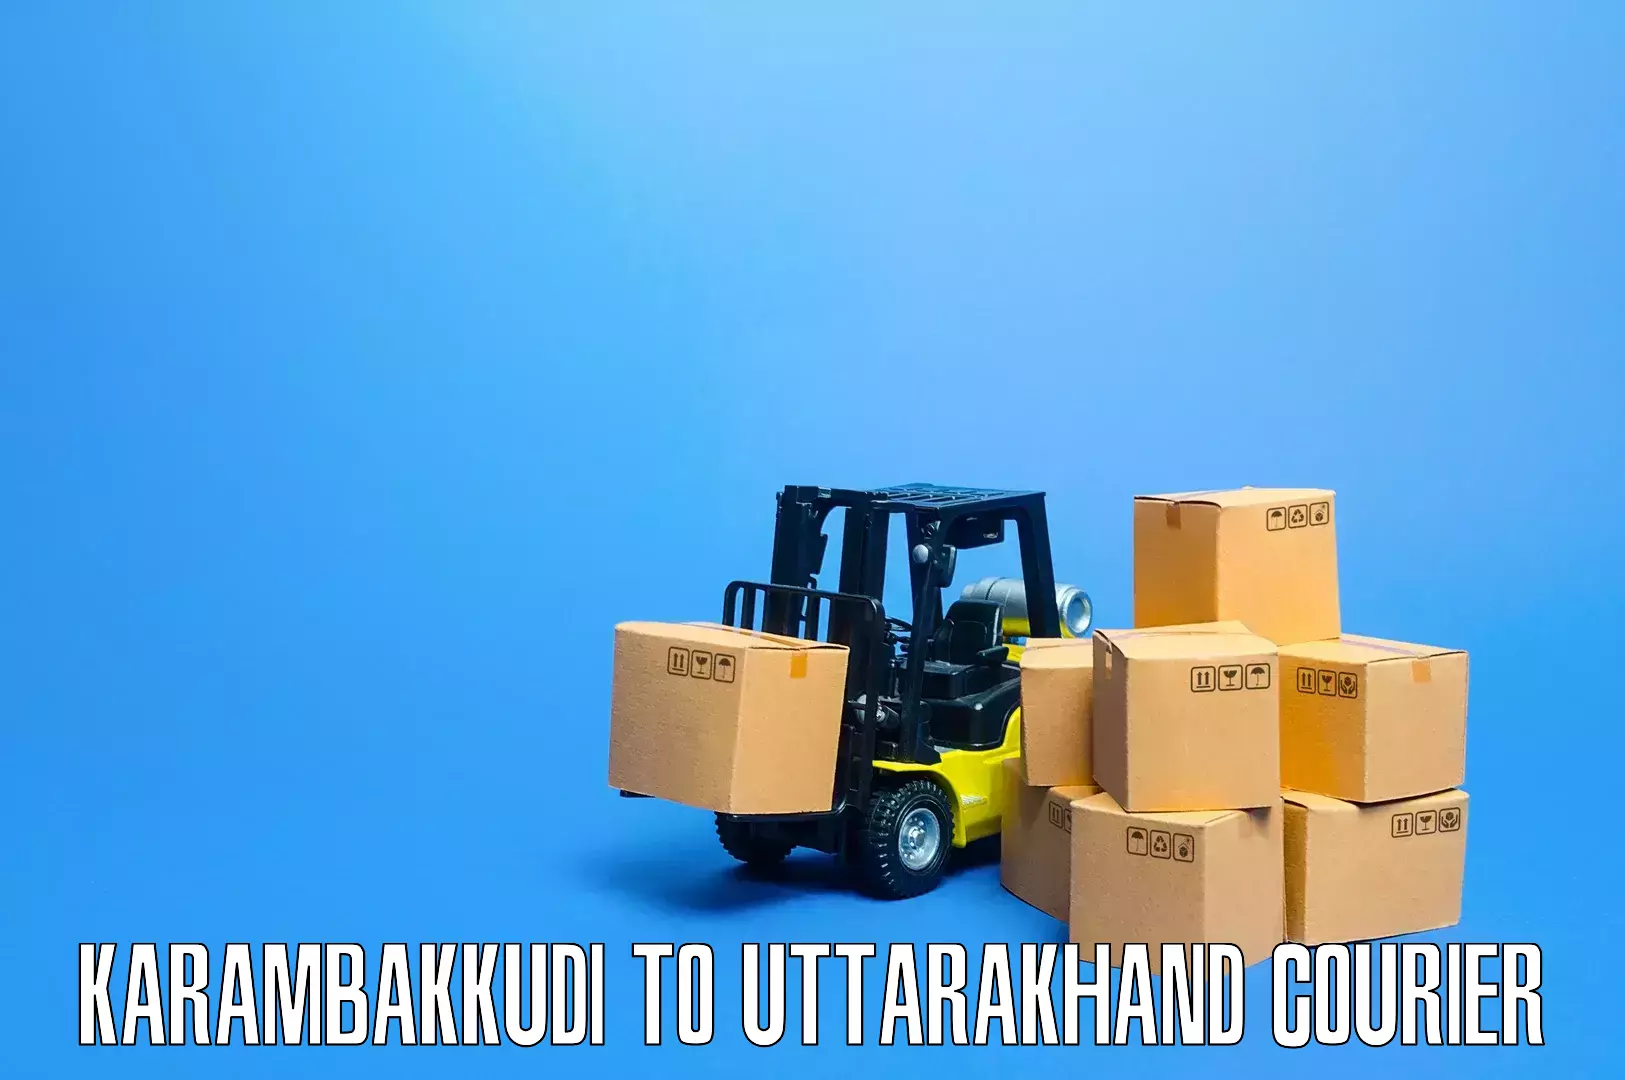 Efficient home goods movers Karambakkudi to IIT Roorkee